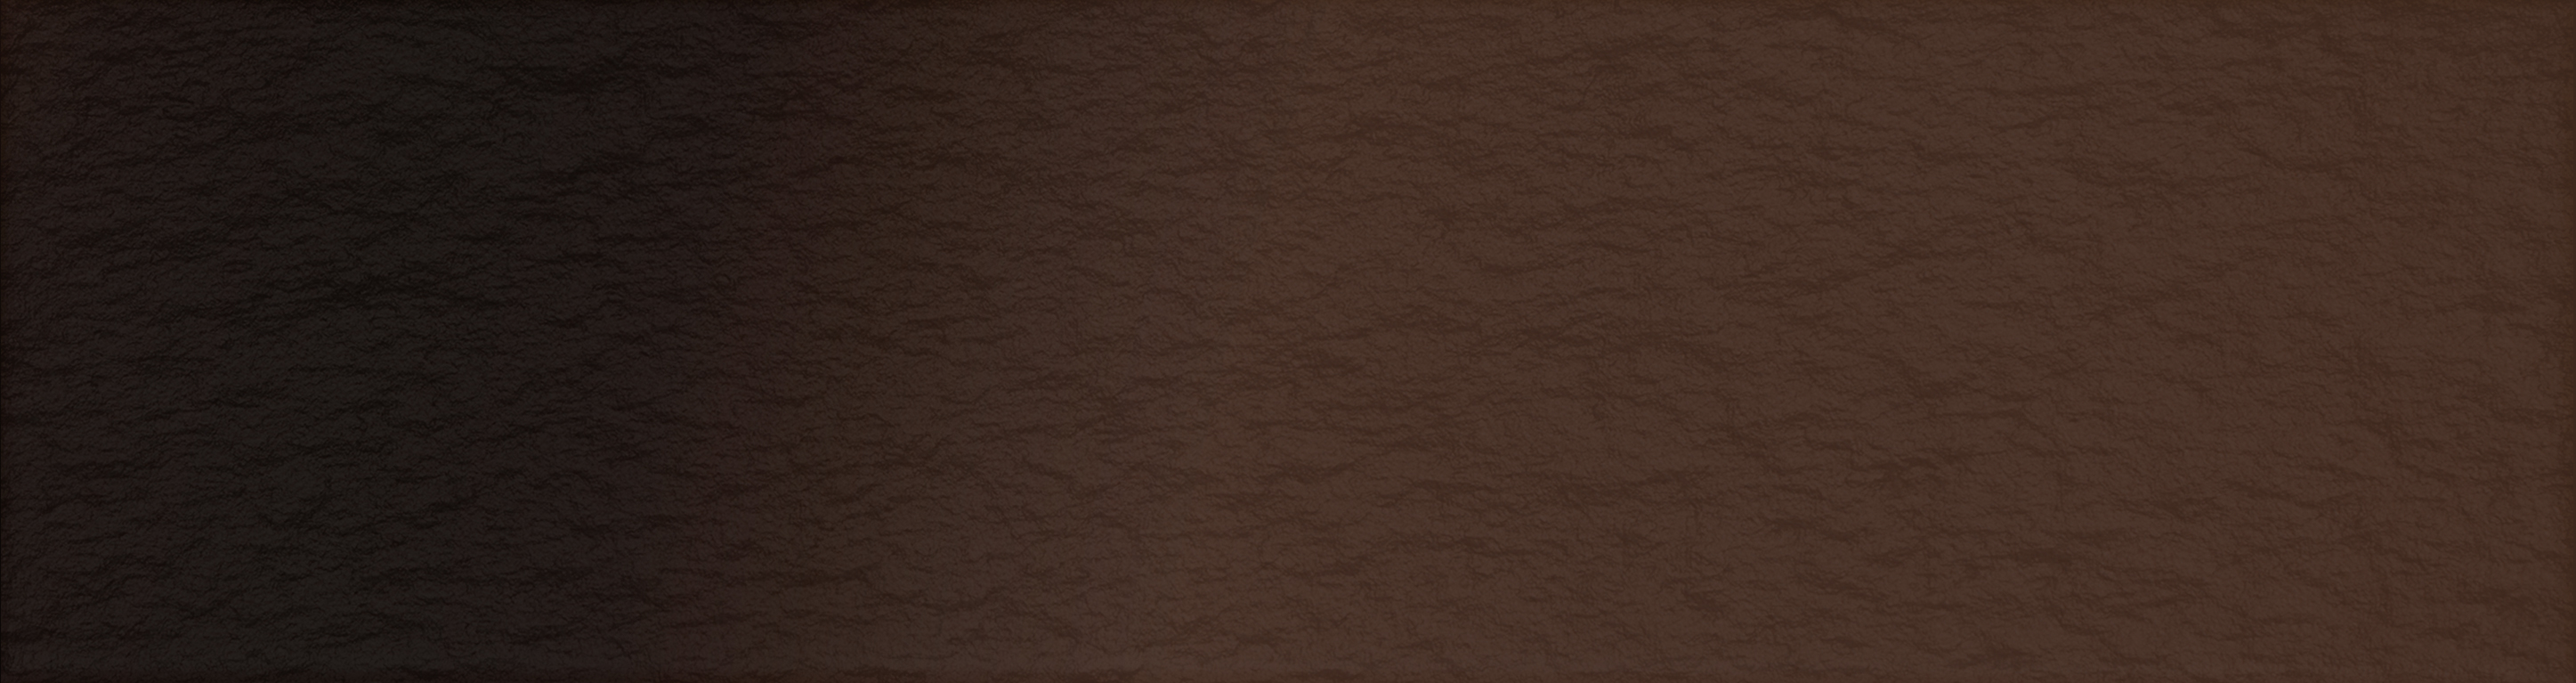 СК000041110 Клинкерная плитка Амстердам Шейд рельеф коричневый 24,5x6,5 Керамин